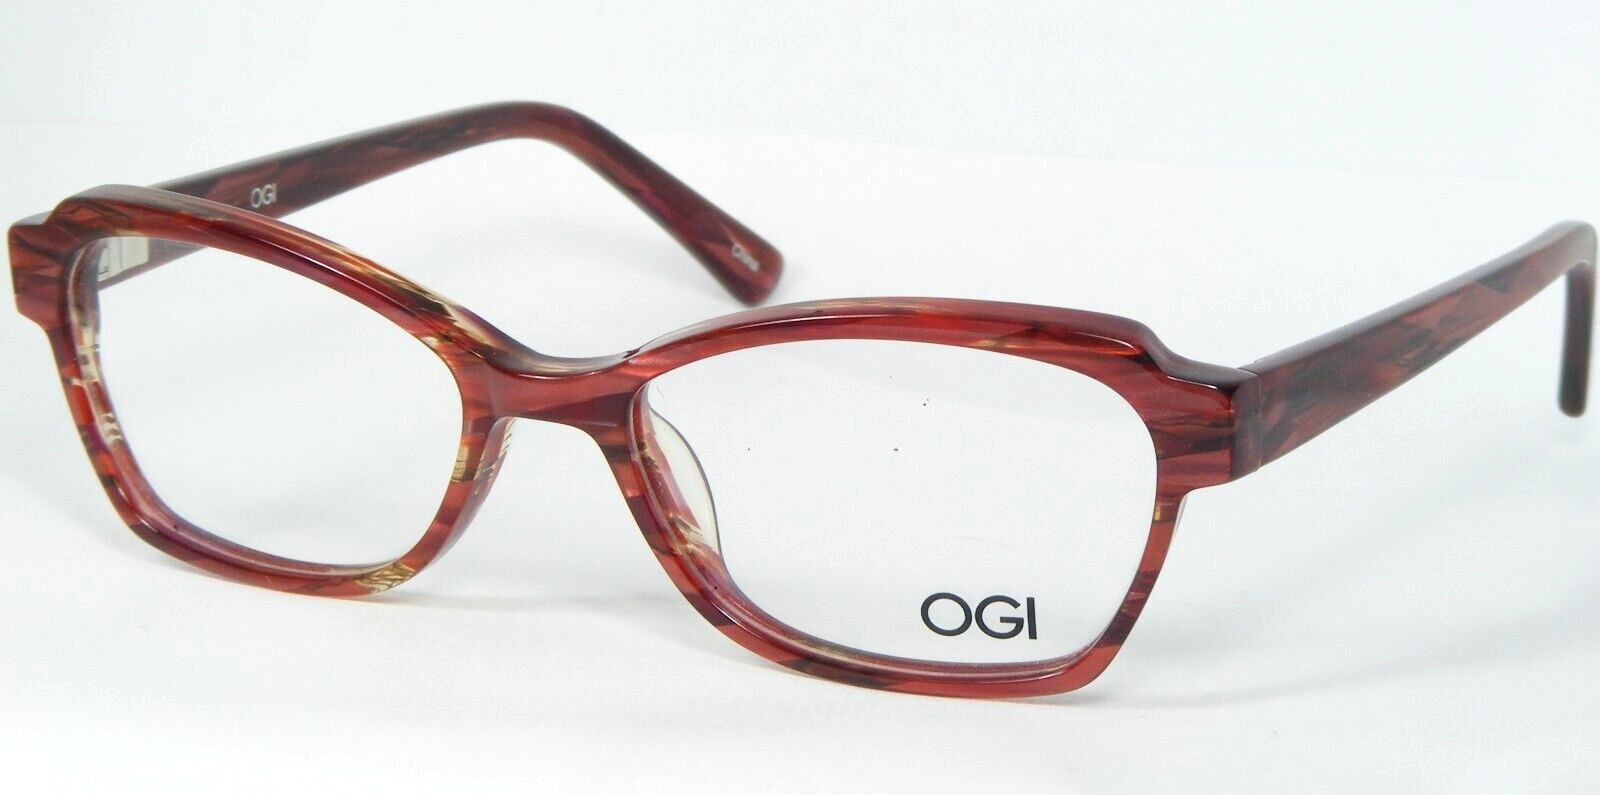 Primary image for OGI Kids OK 312 1556 Cranberry Tiger EYEGLASSES GLASSES FRAME 47-15-130mm